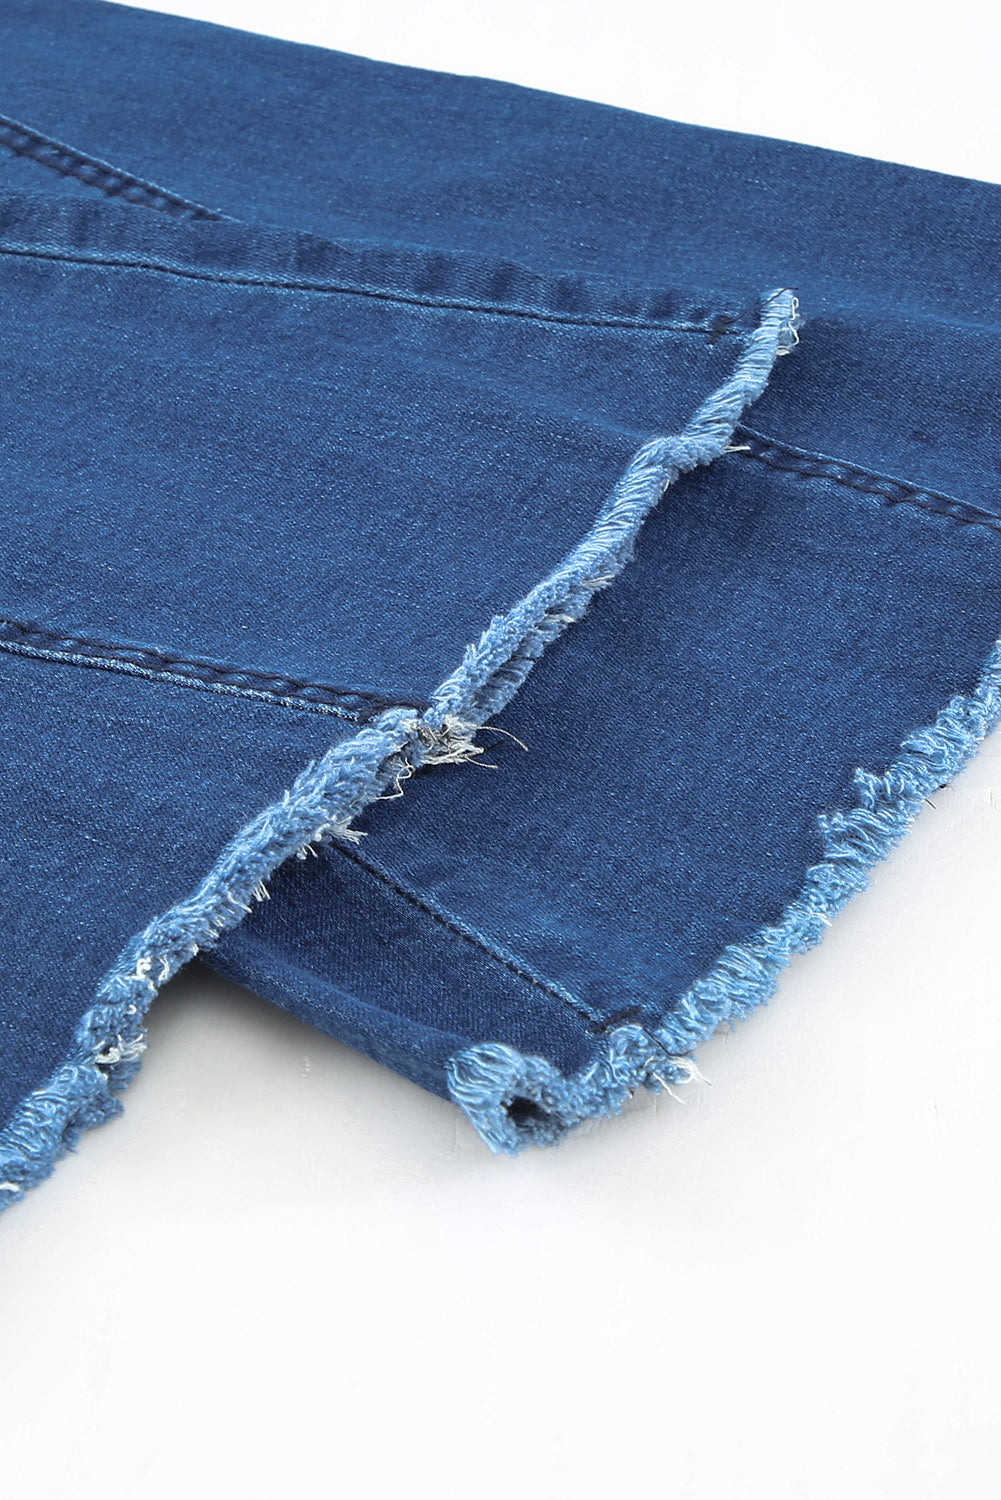 Sky Blue Distressed Bell Bottom Denim Pants Jeans JT's Designer Fashion